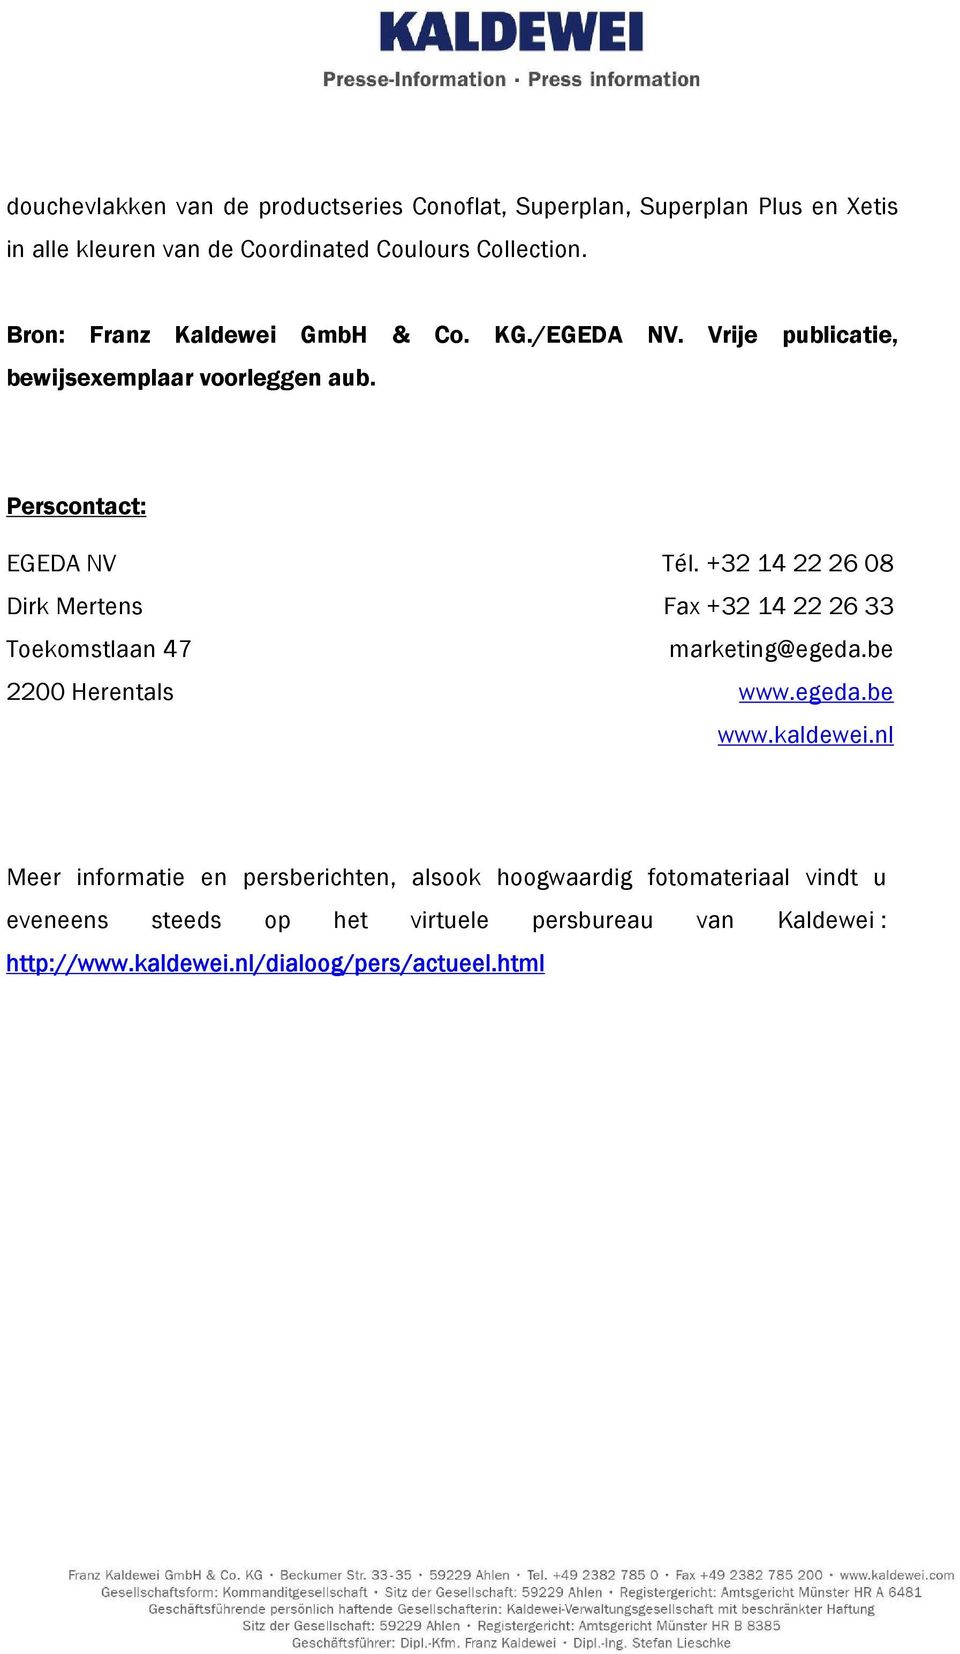 +32 14 22 26 08 Dirk Mertens Fax +32 14 22 26 33 Toekomstlaan 47 marketing@egeda.be 2200 Herentals www.egeda.be www.kaldewei.